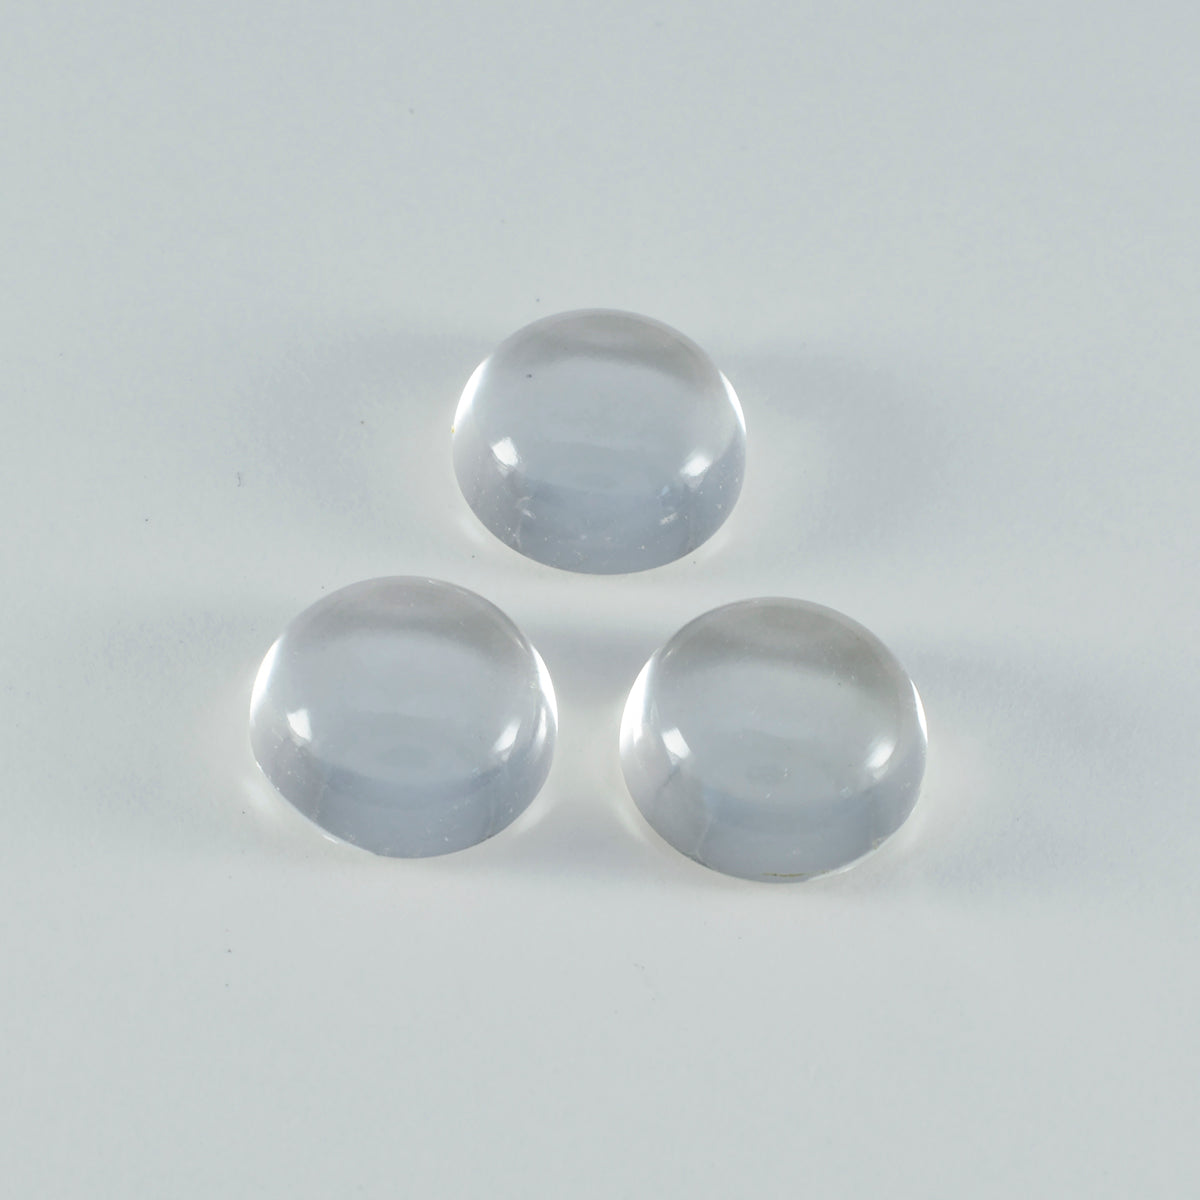 Riyogems 1PC witte kristalkwarts cabochon 11x11 mm ronde vorm mooie kwaliteit losse edelsteen